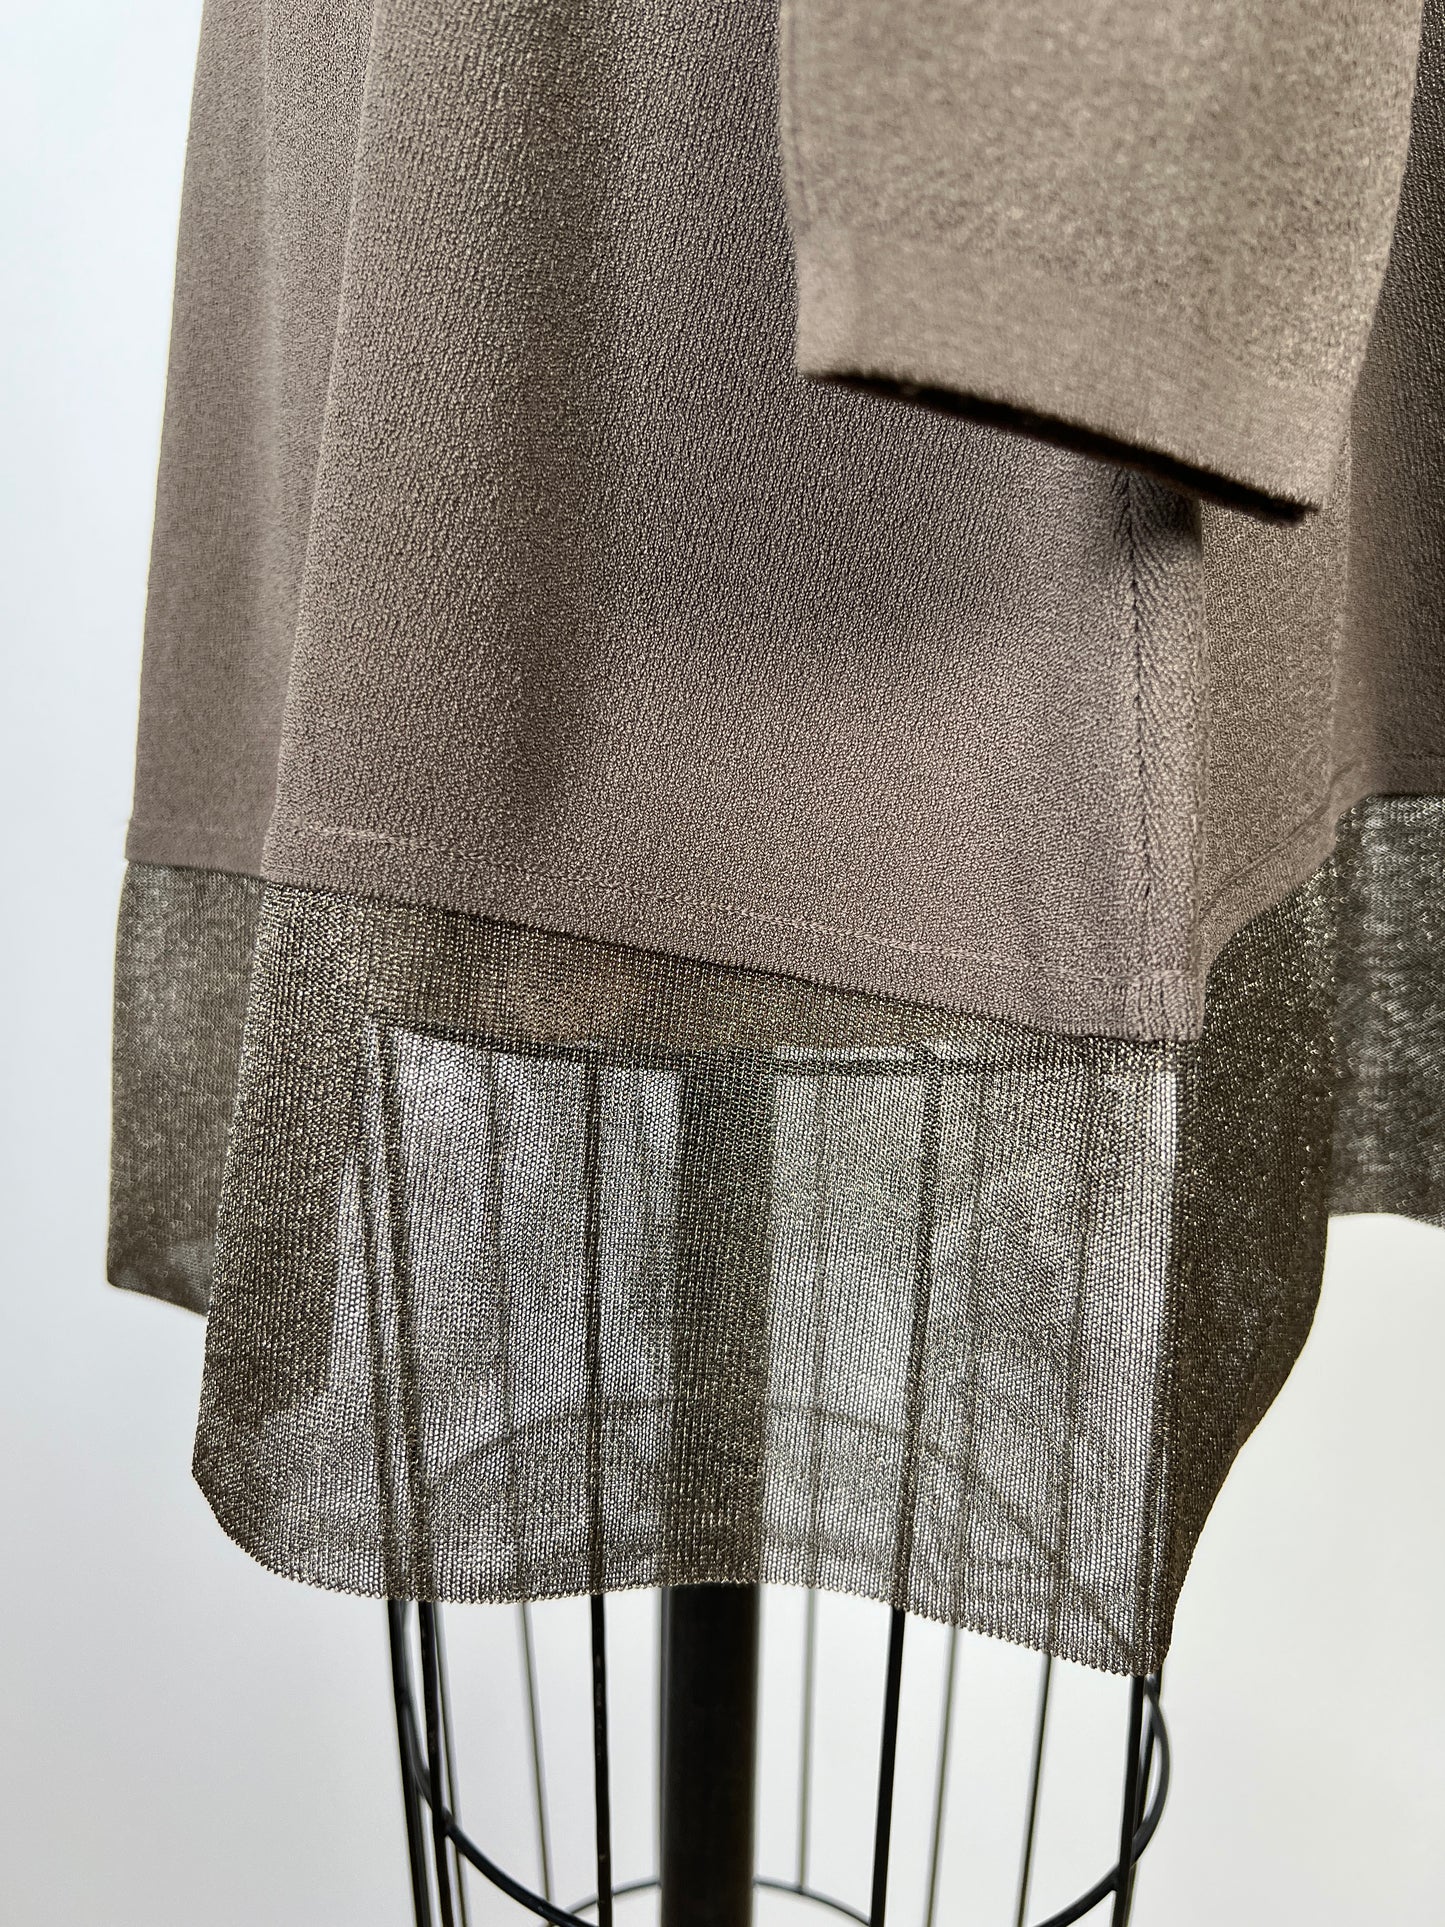 Robe tunique taupe à ourlet métallisé (TU)